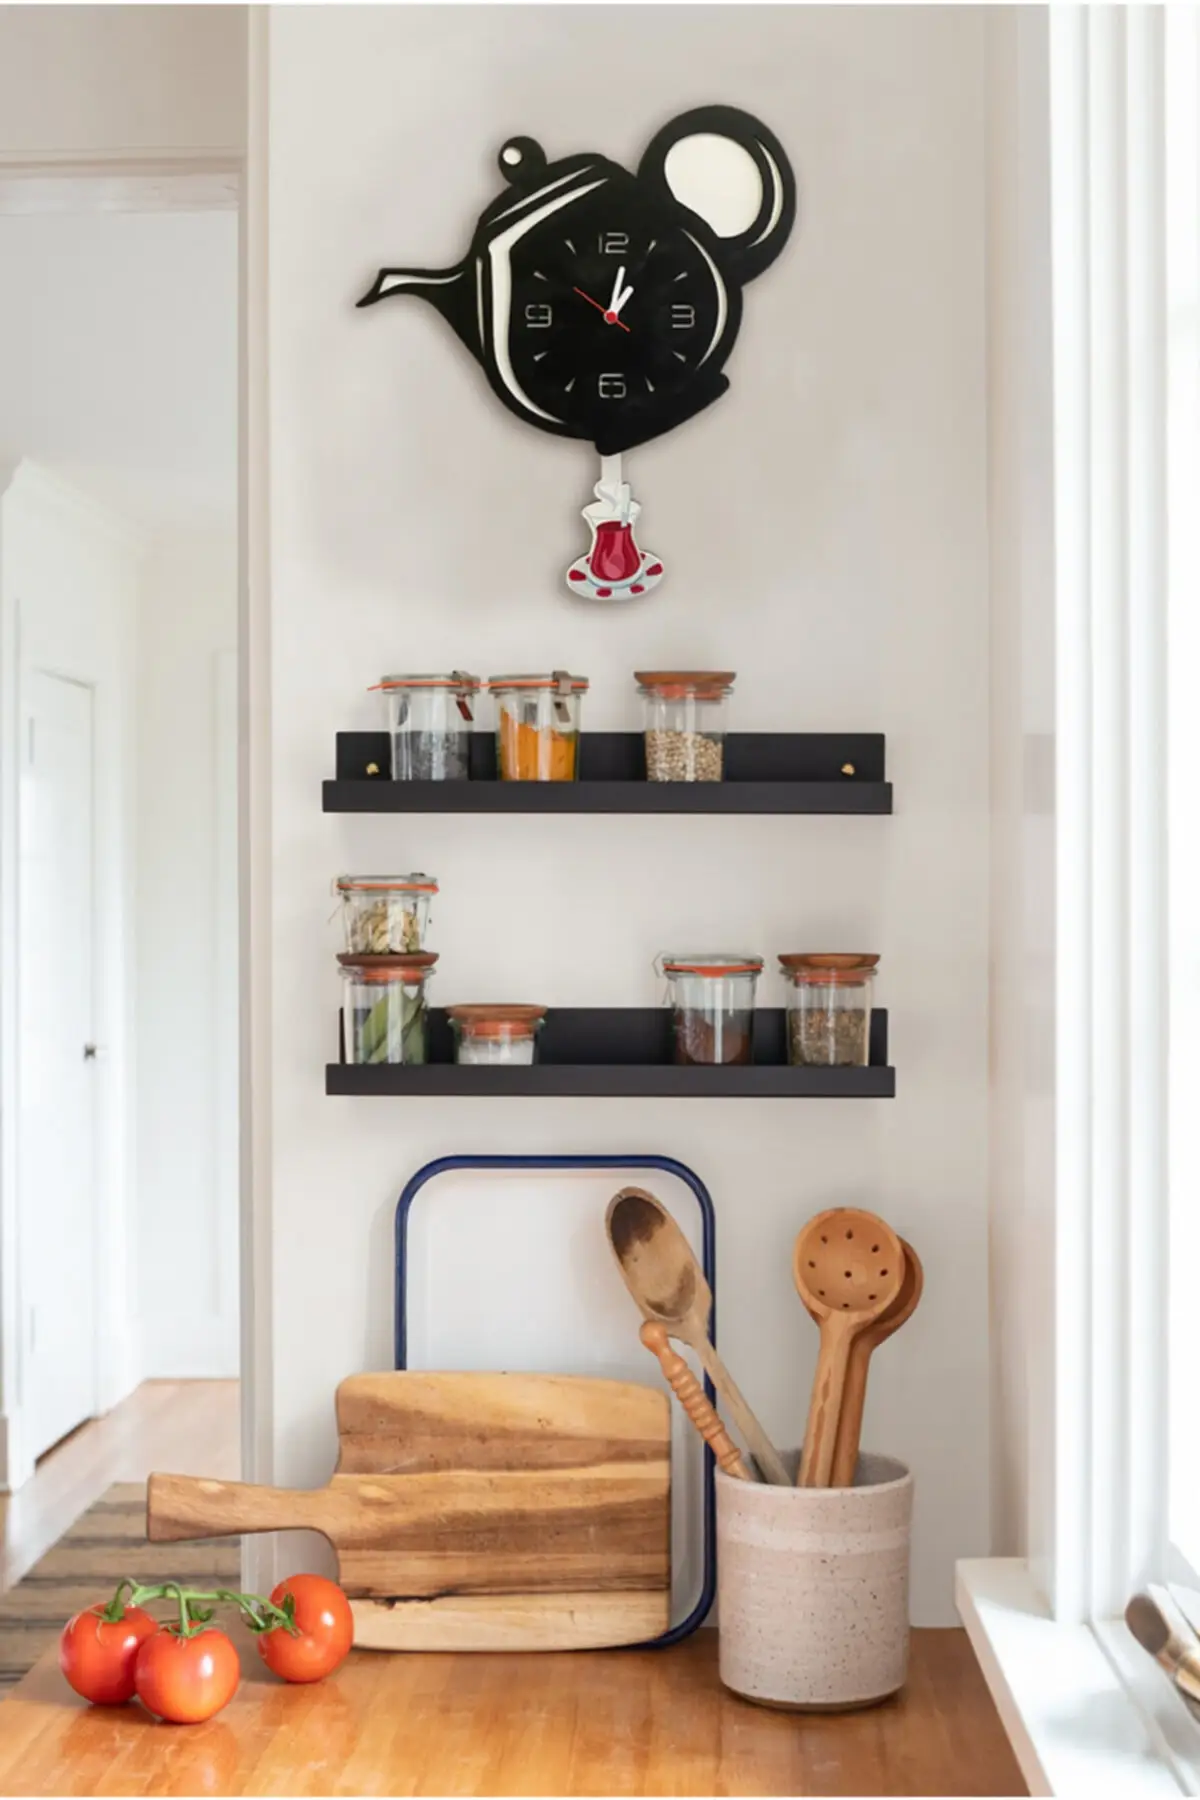 Černá konvička houpání kyvadlo kuchyň zeď hodiny 37x32 stylové výraz přitažlivý design domácí dekorace zásoby